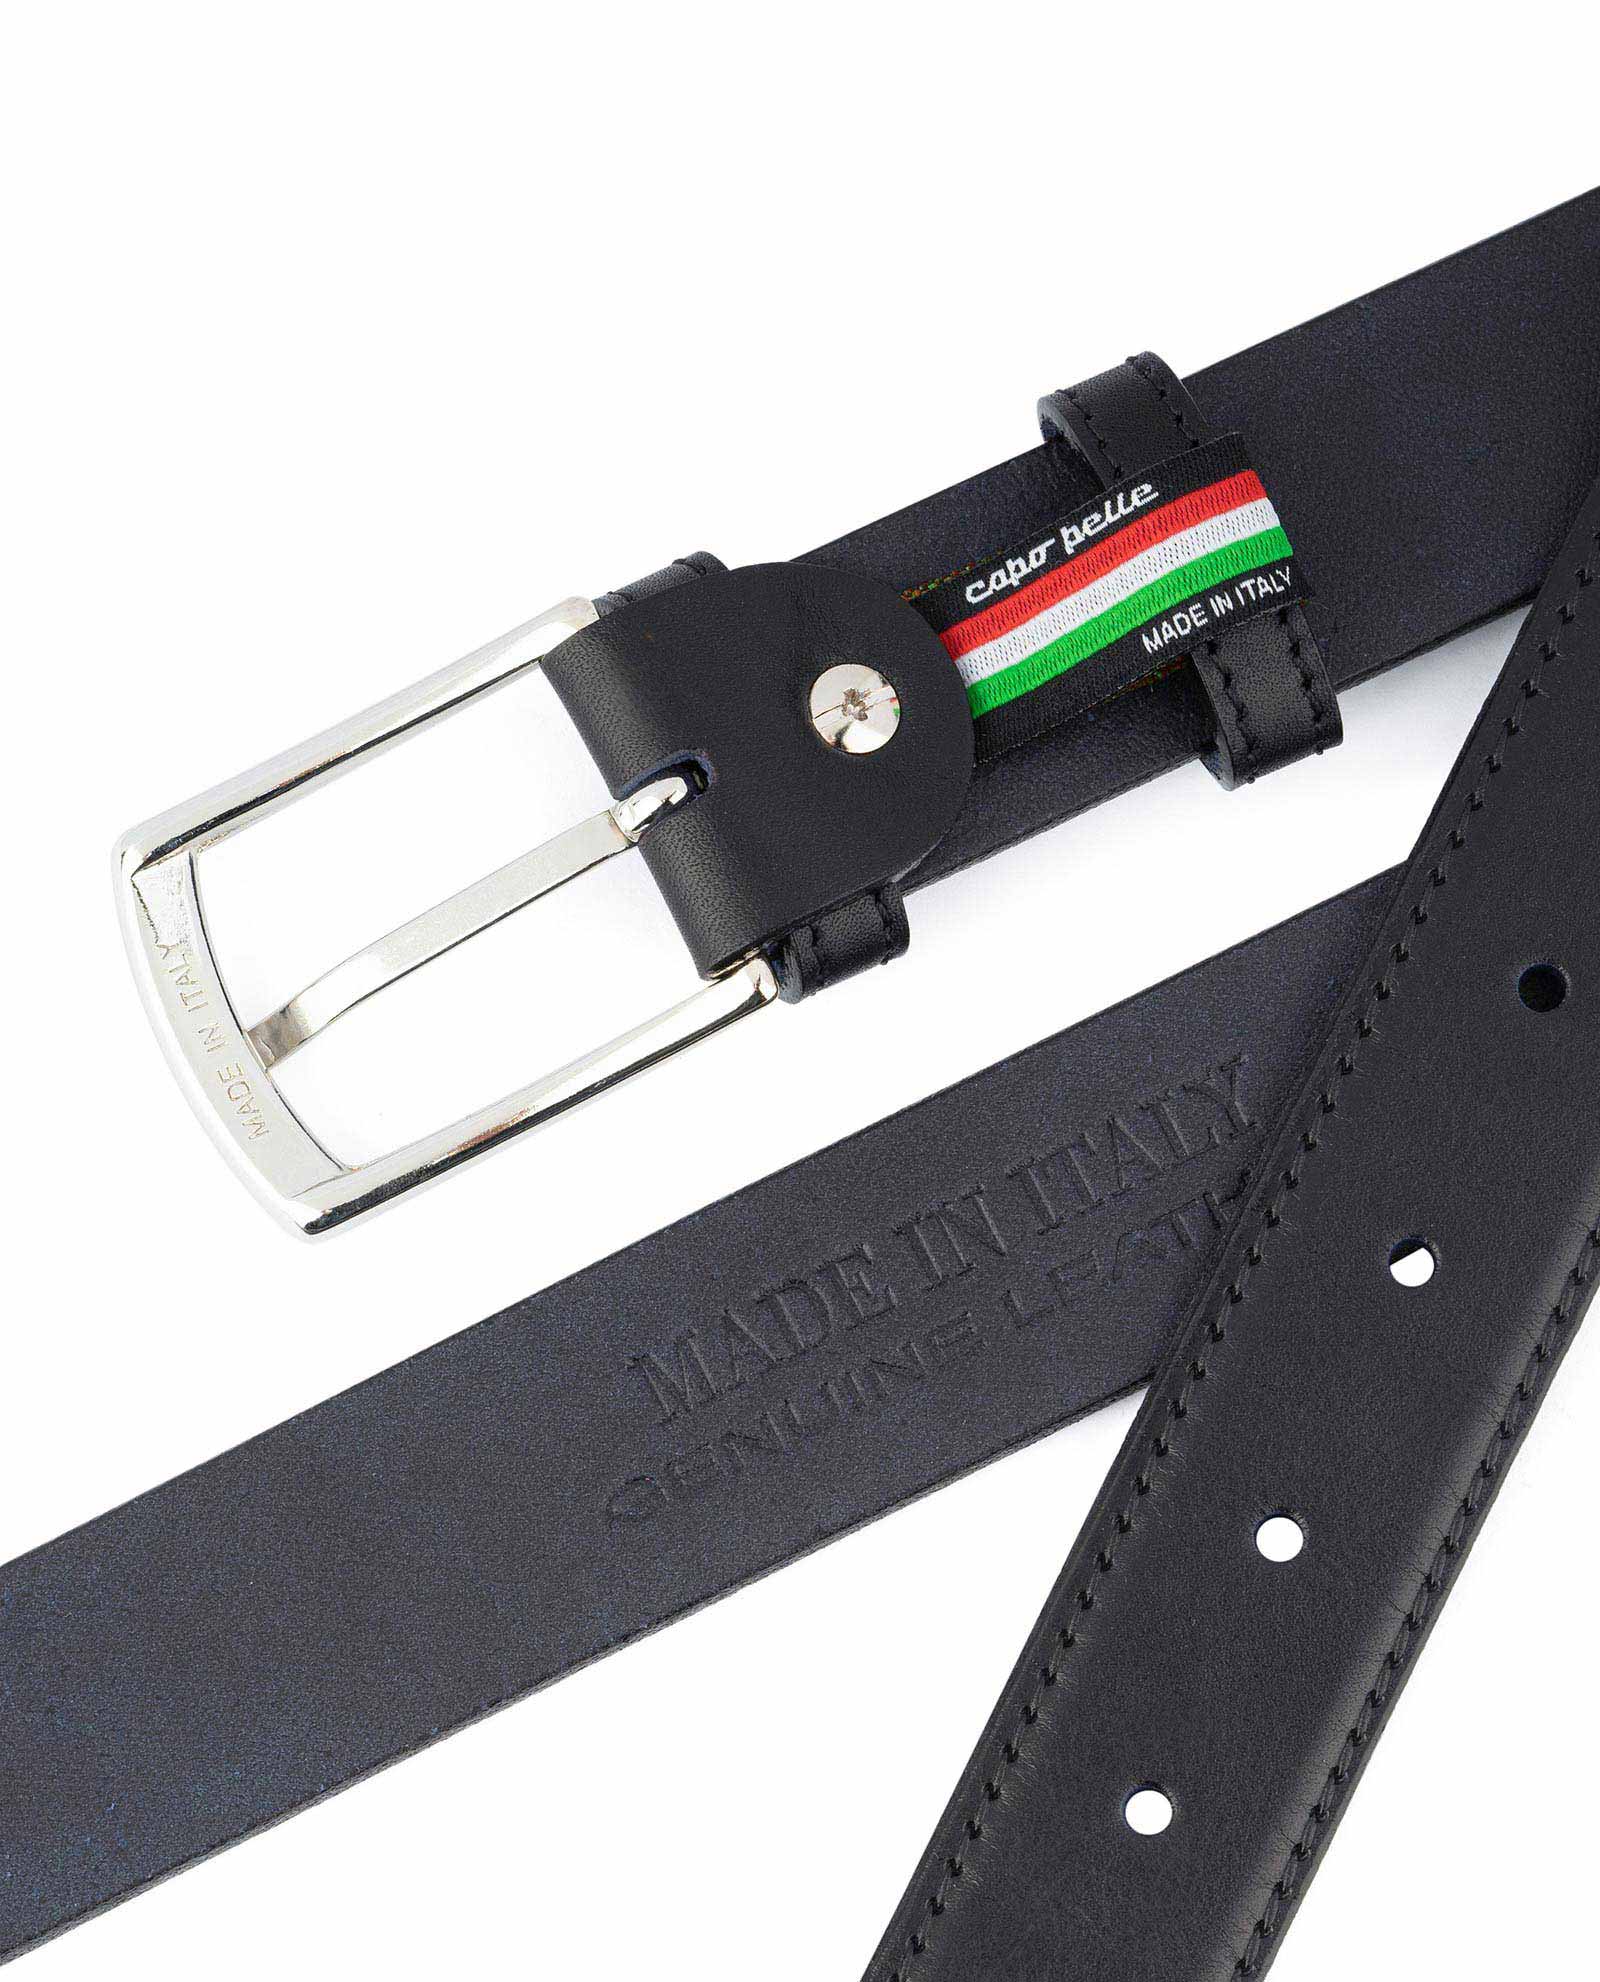 Black Braided Italian Full-grain Leather Belt, In stock!